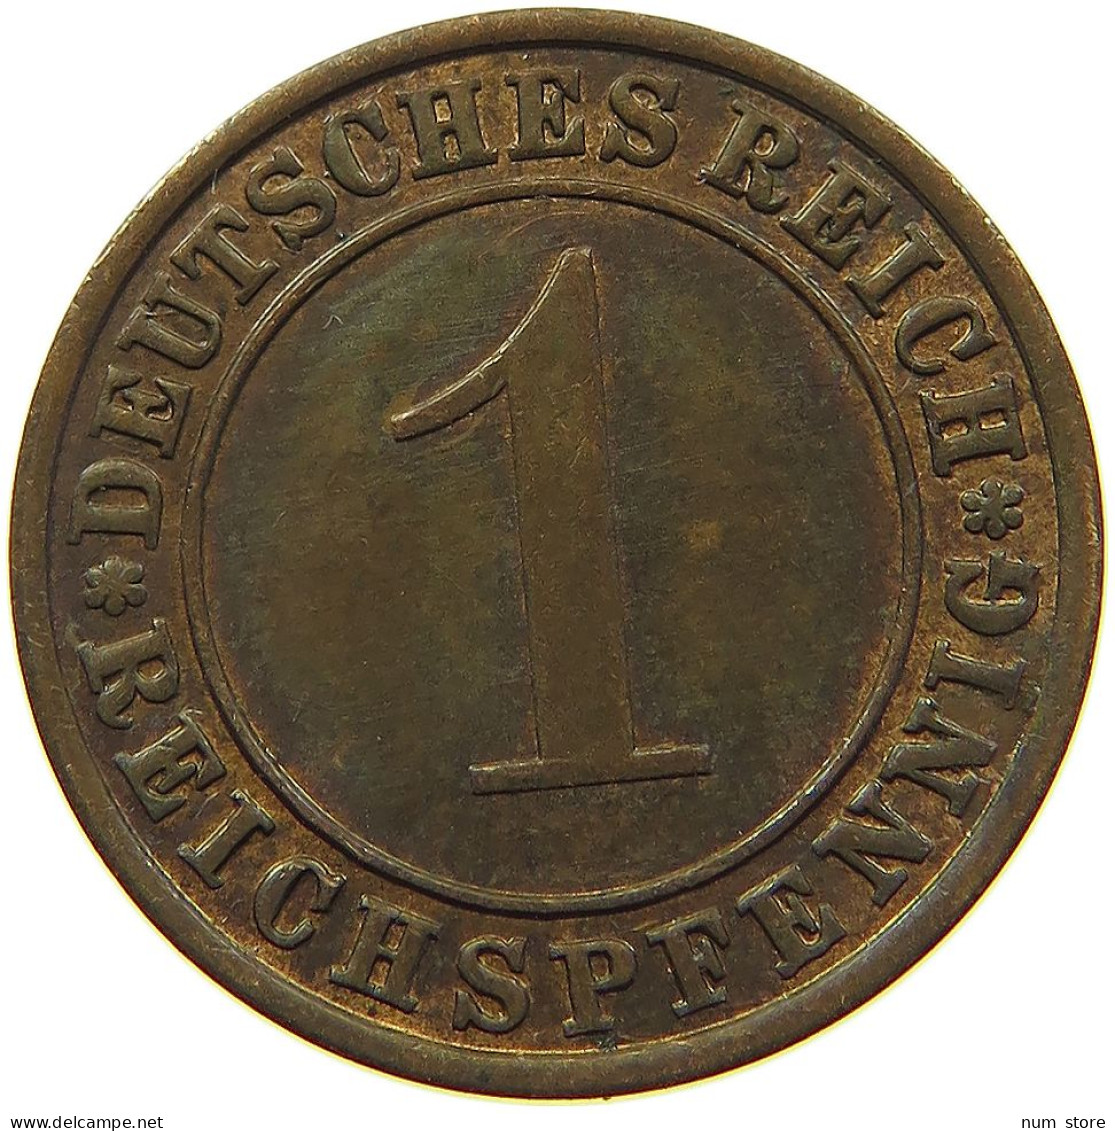 WEIMARER REPUBLIK RENTENPFENNIG 1932 A  #MA 100182 - 1 Renten- & 1 Reichspfennig